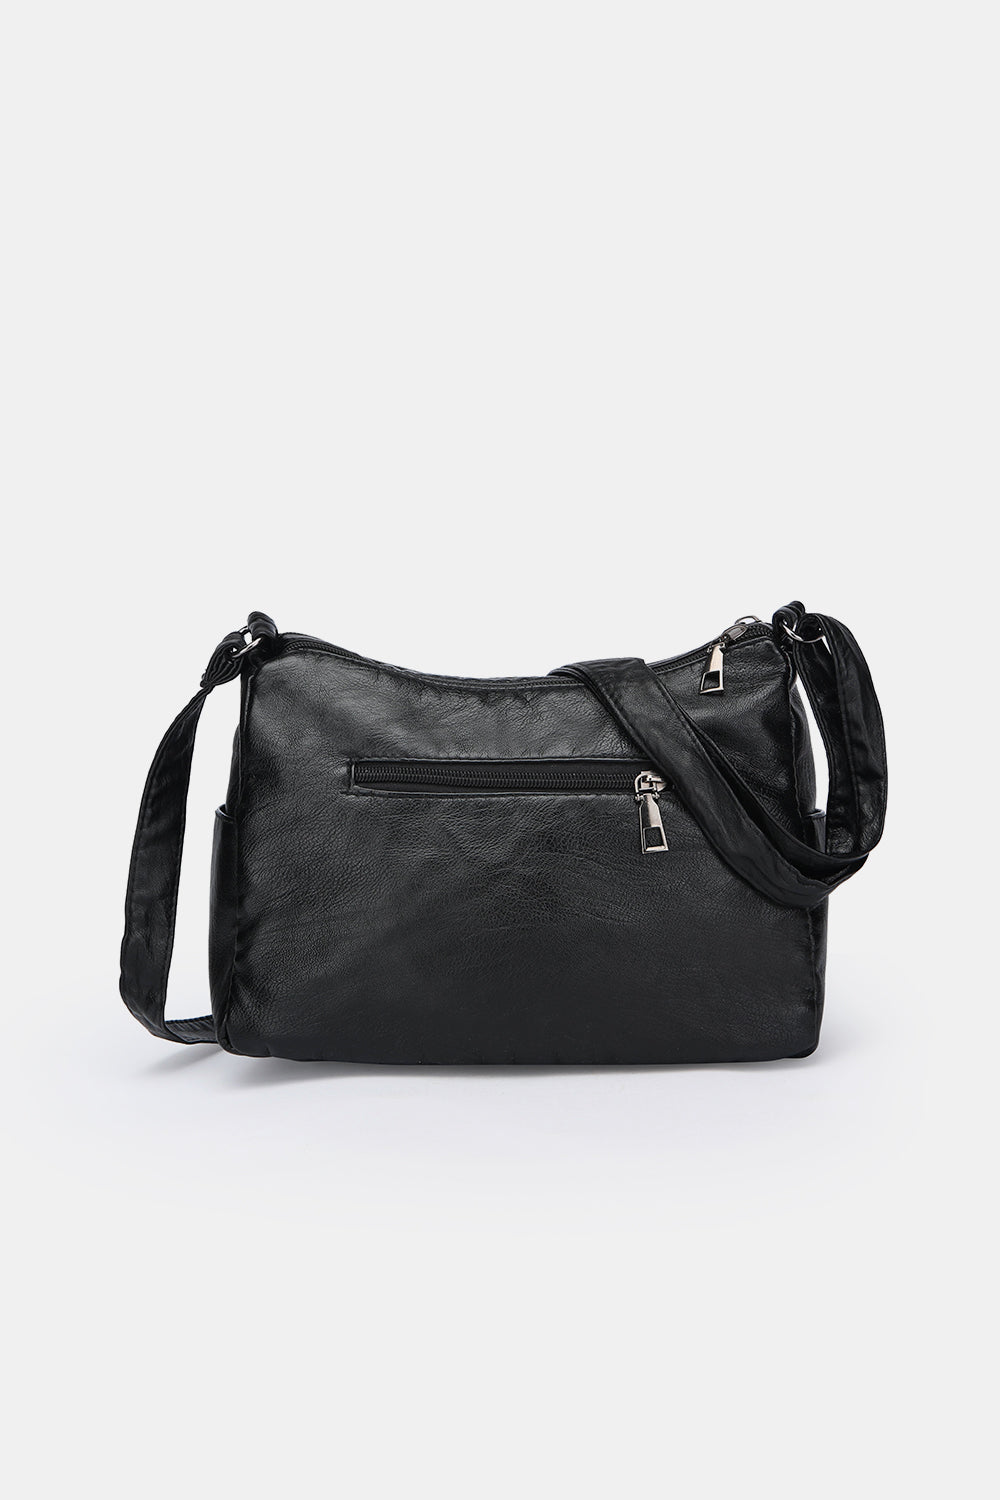 PU Leather Medium Shoulder Bag